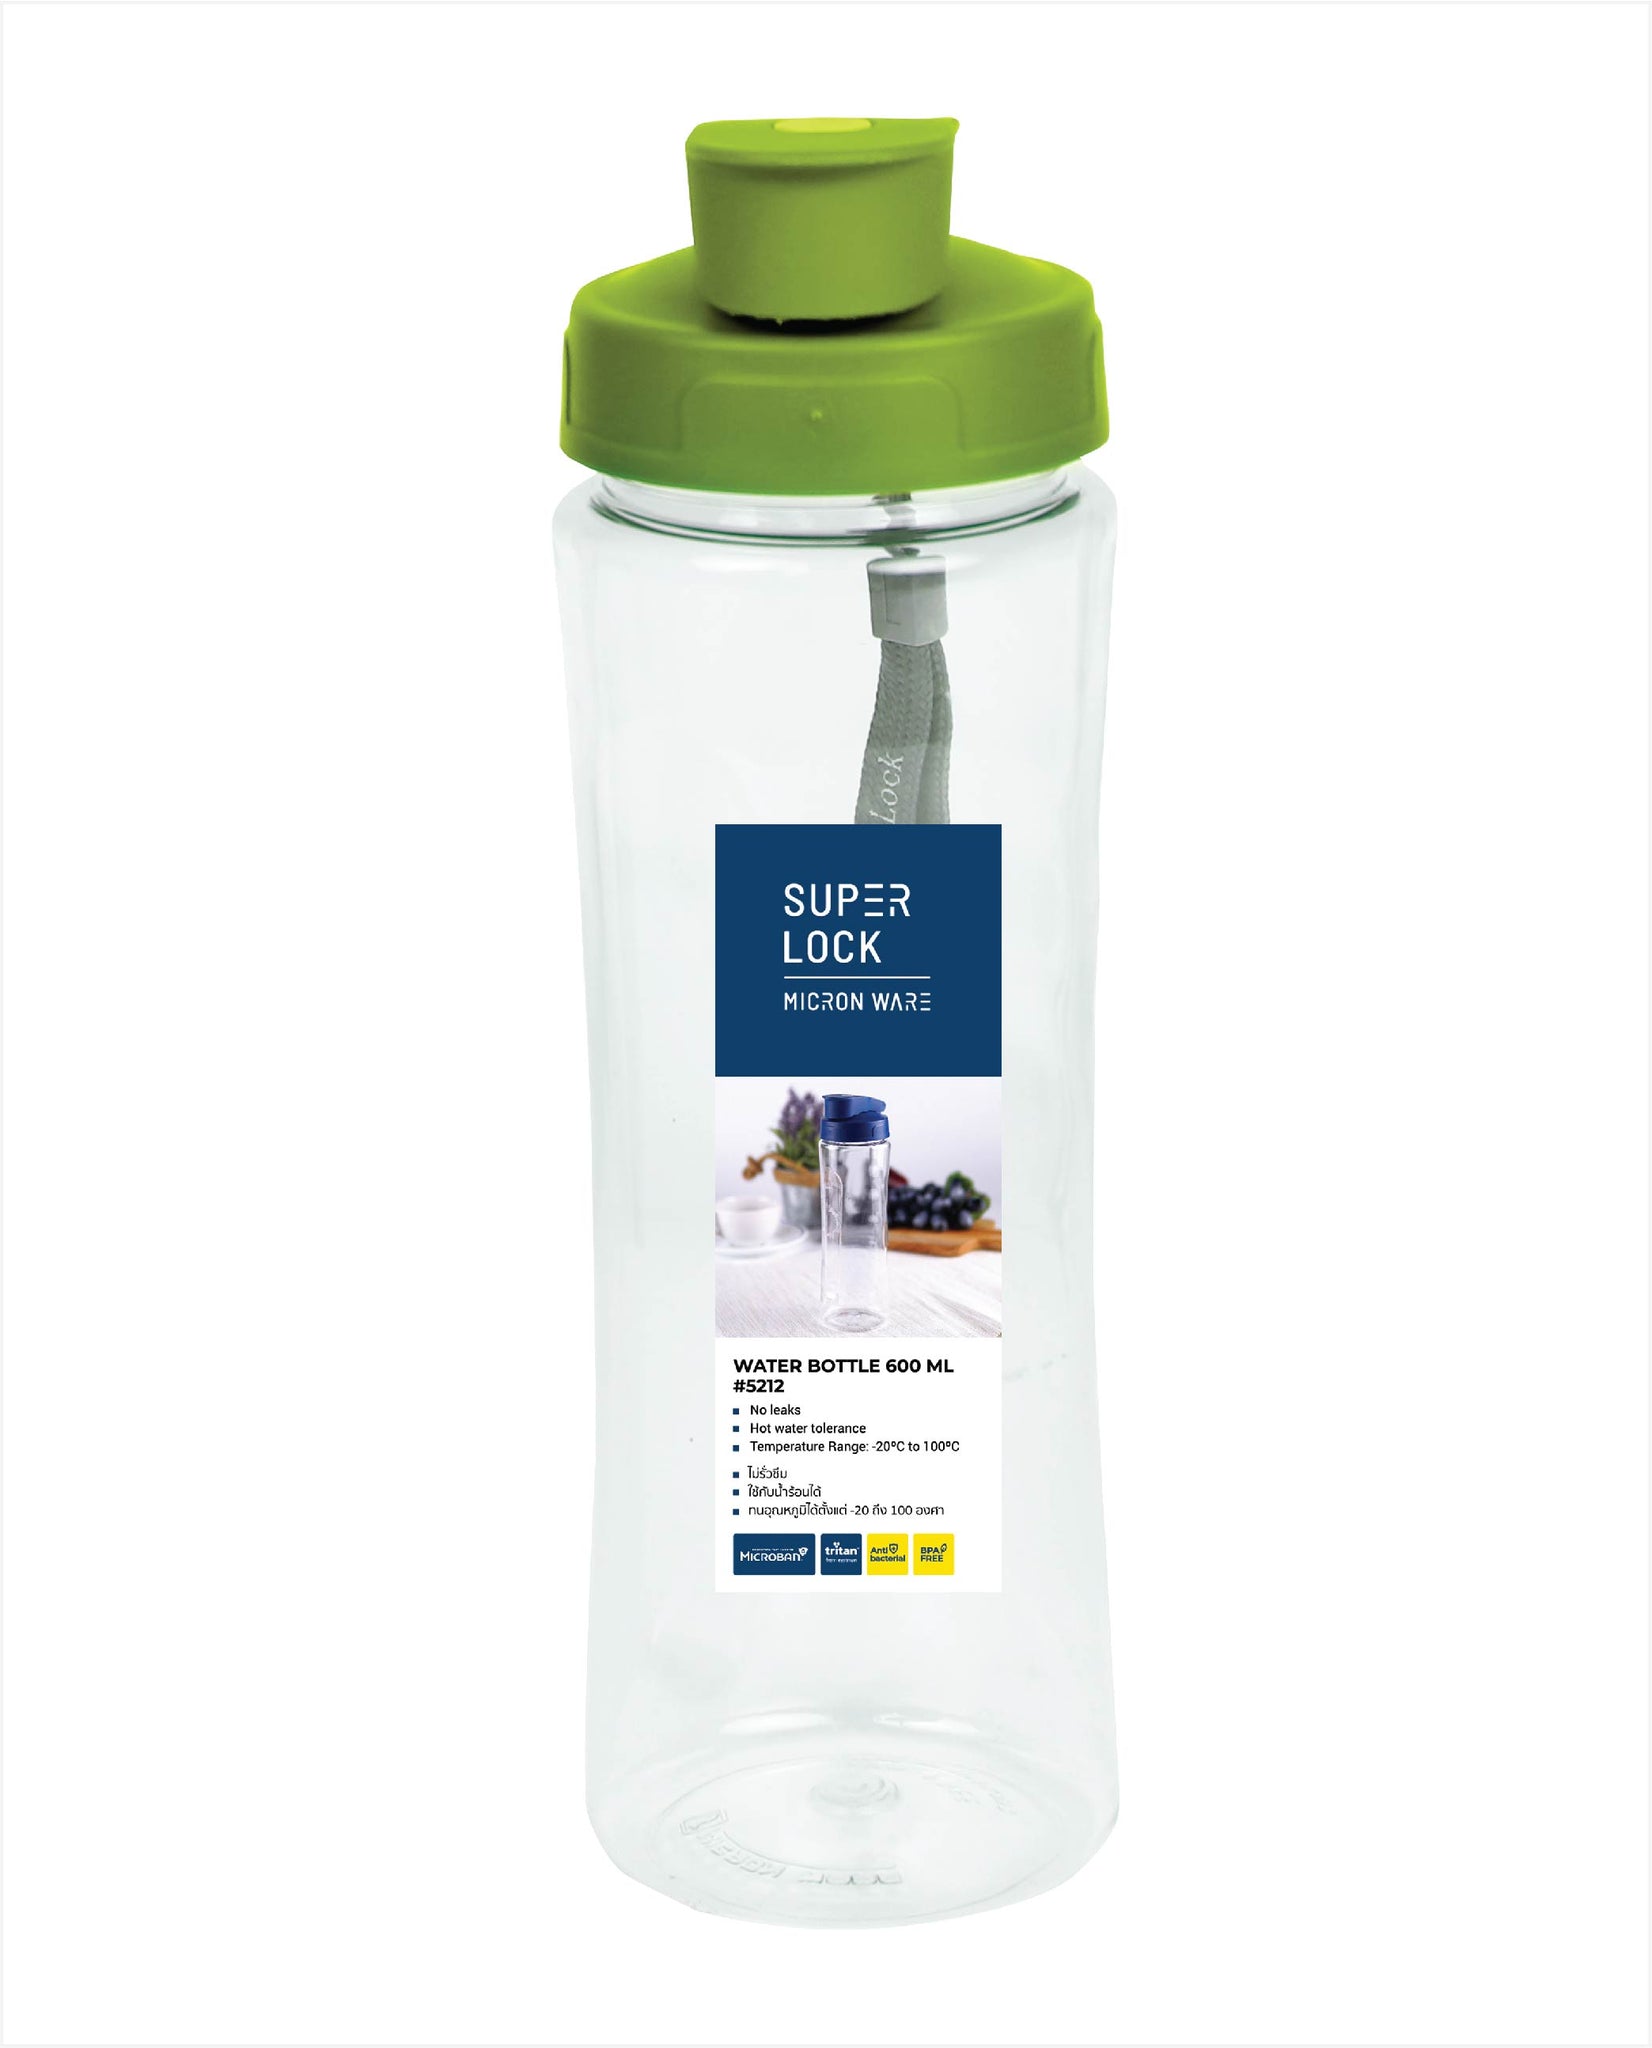 MSCshoping 5212 Tritan Water bottle 600 ml.  (Made to order)